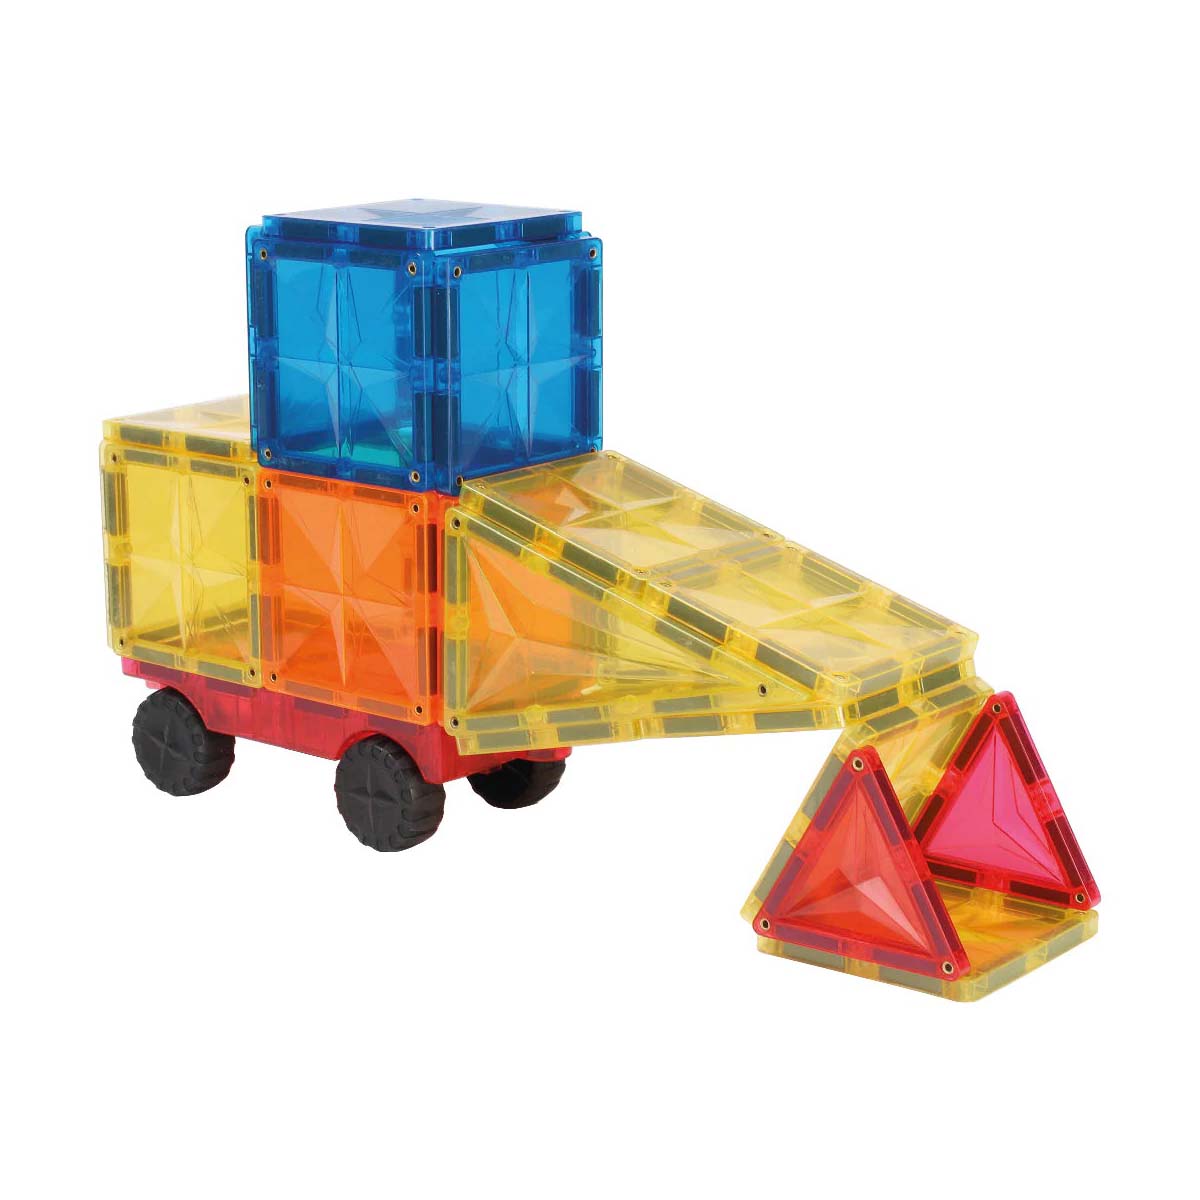 De Cleverclixx Wheels pack intense 25 stuks is een super leuke set met magnetische bouwstenen voor elk kind dat dol is op voertuigen. Met deze leuke set kan jouw kindje namelijk helemaal zelf een voertuig maken! VanZus.